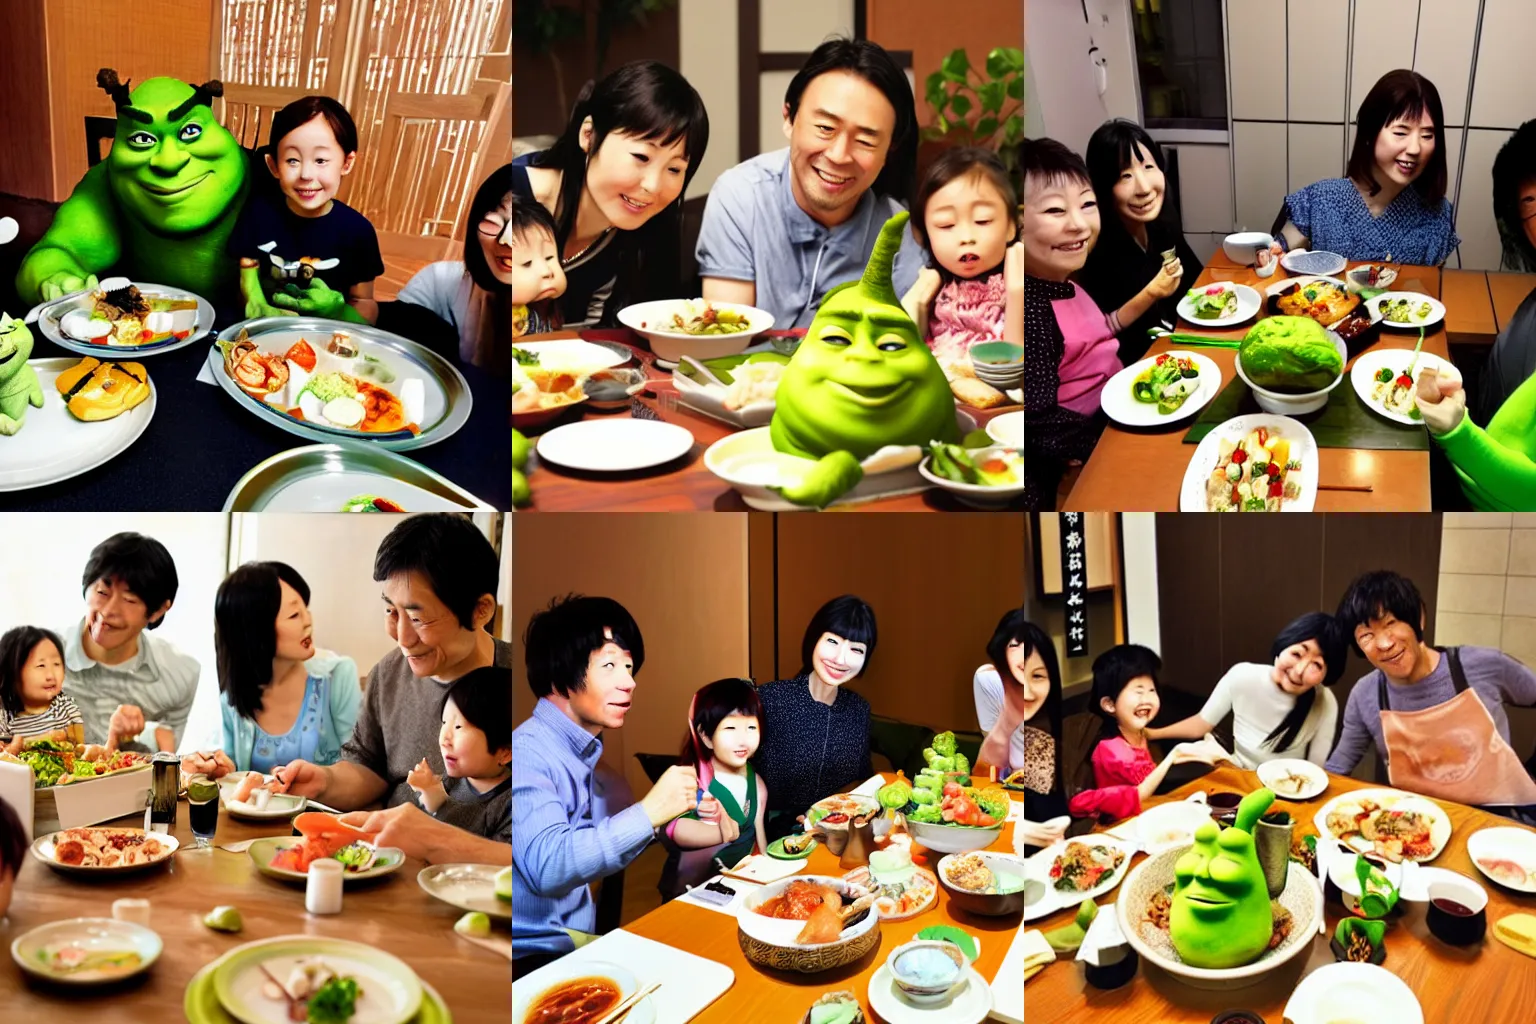 Prompt: japanese family having dinner along with shrek